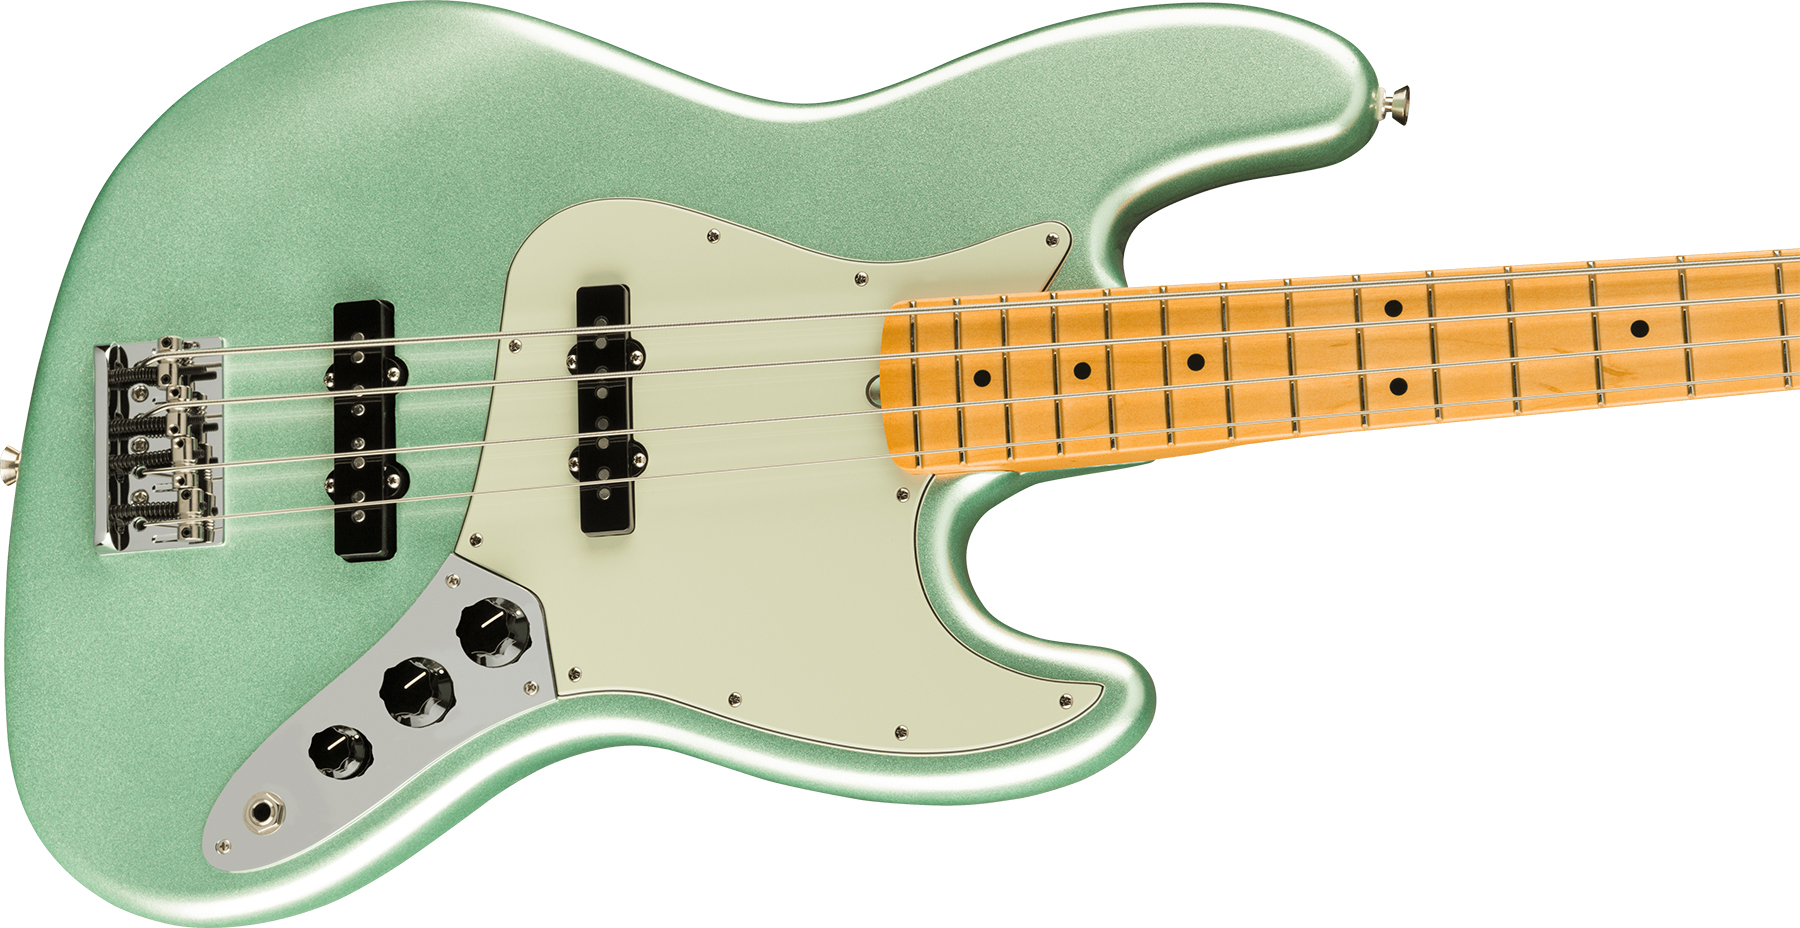 Fender Jazz Bass American Professional Ii Usa Mn - Mystic Surf Green - Bajo eléctrico de cuerpo sólido - Variation 2